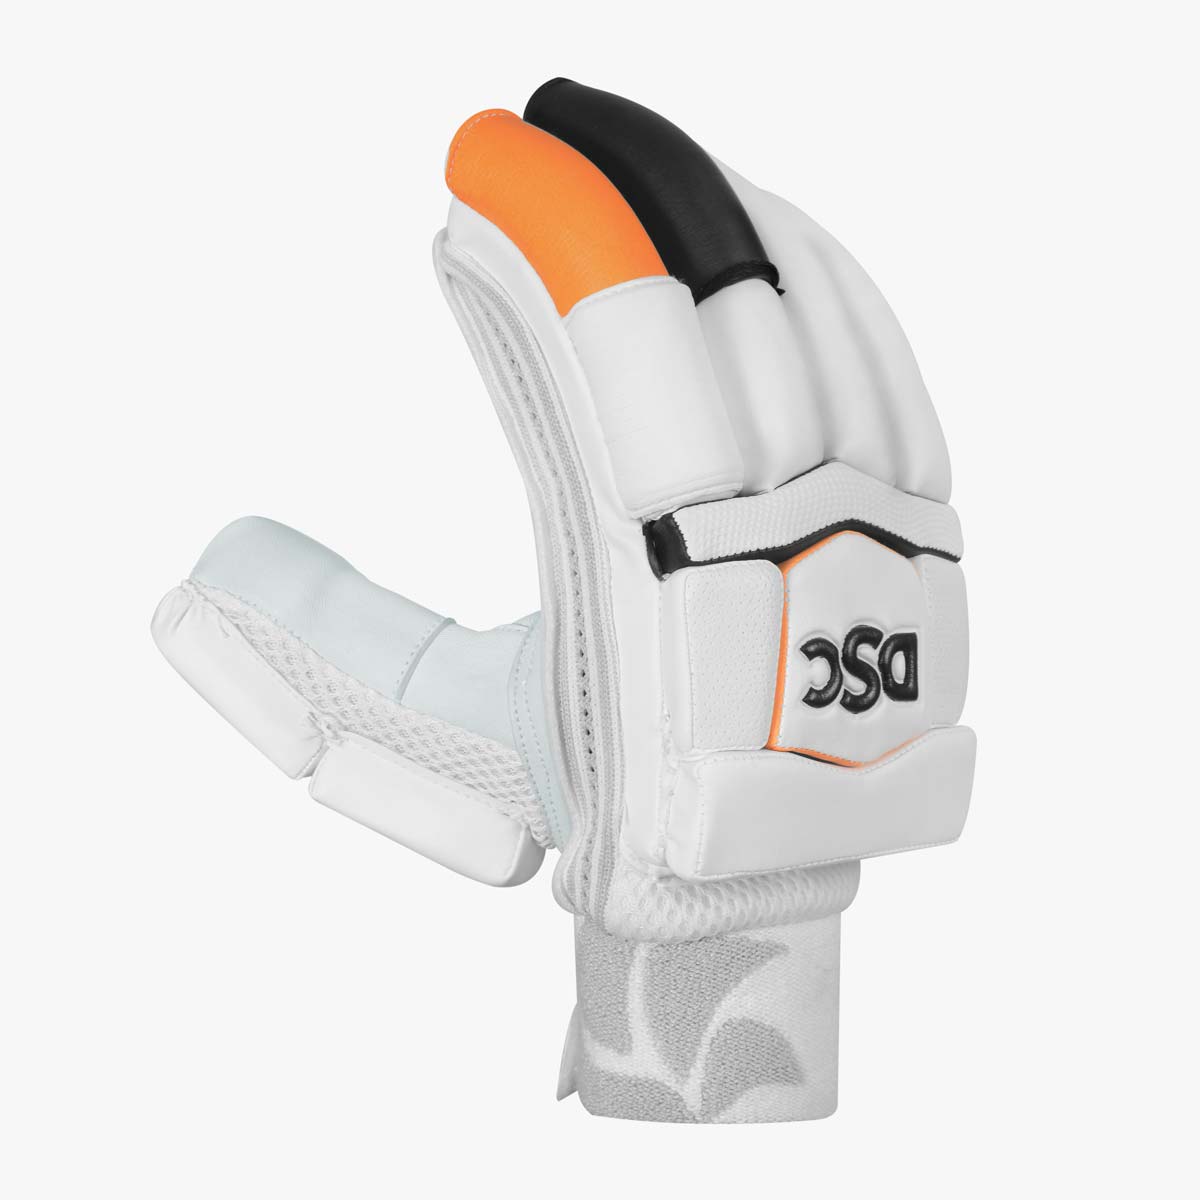 krunch-700-batting-gloves-4.jpg